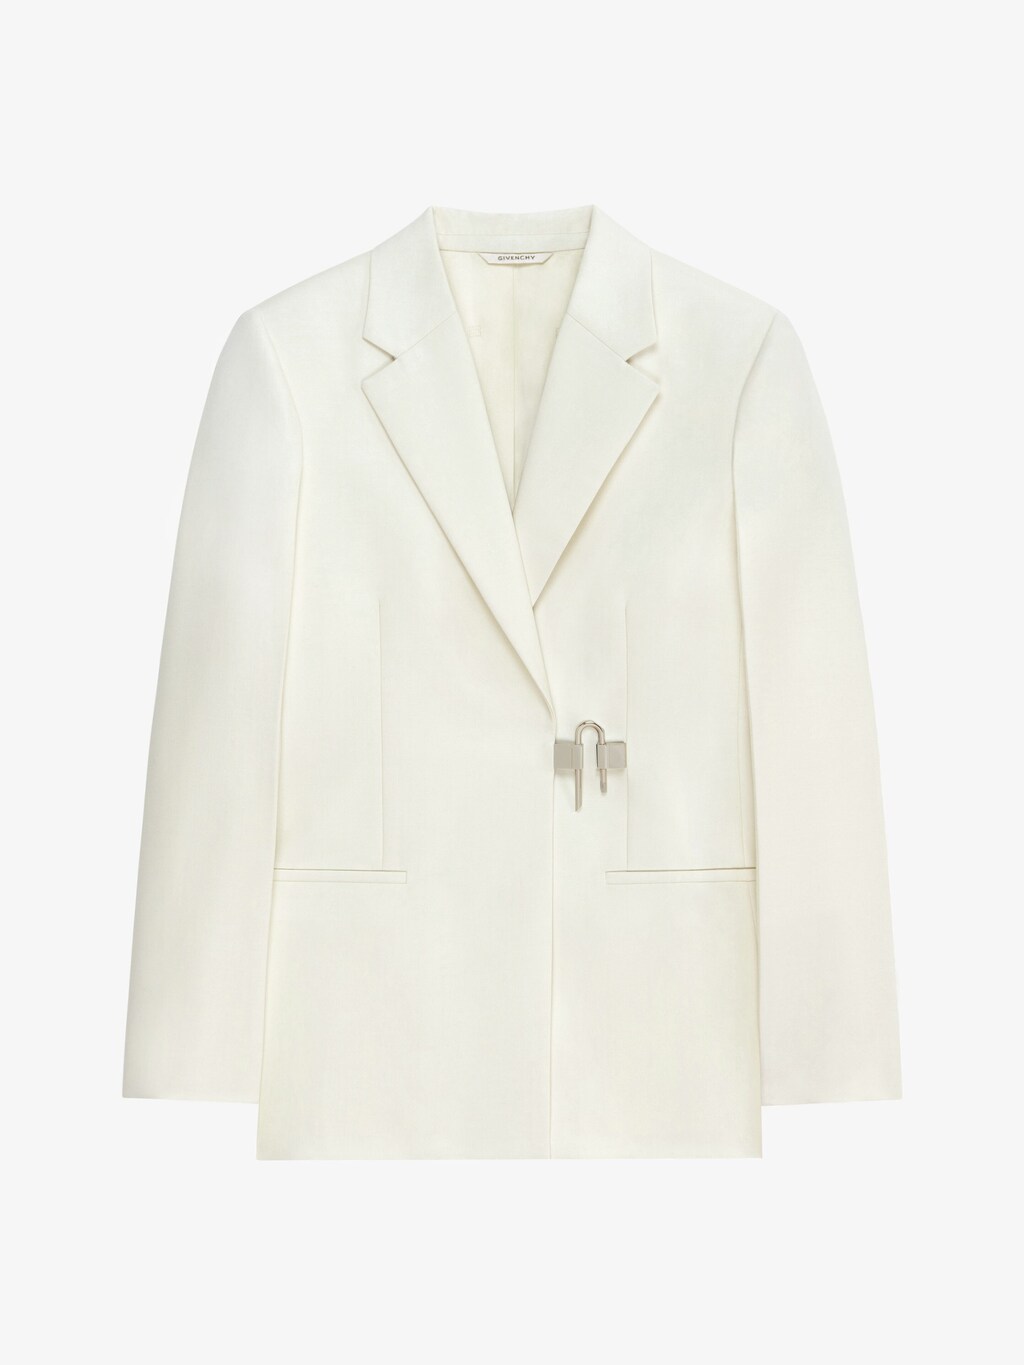 Jackets & Coats | Women Ready-to-wear | GIVENCHY Paris